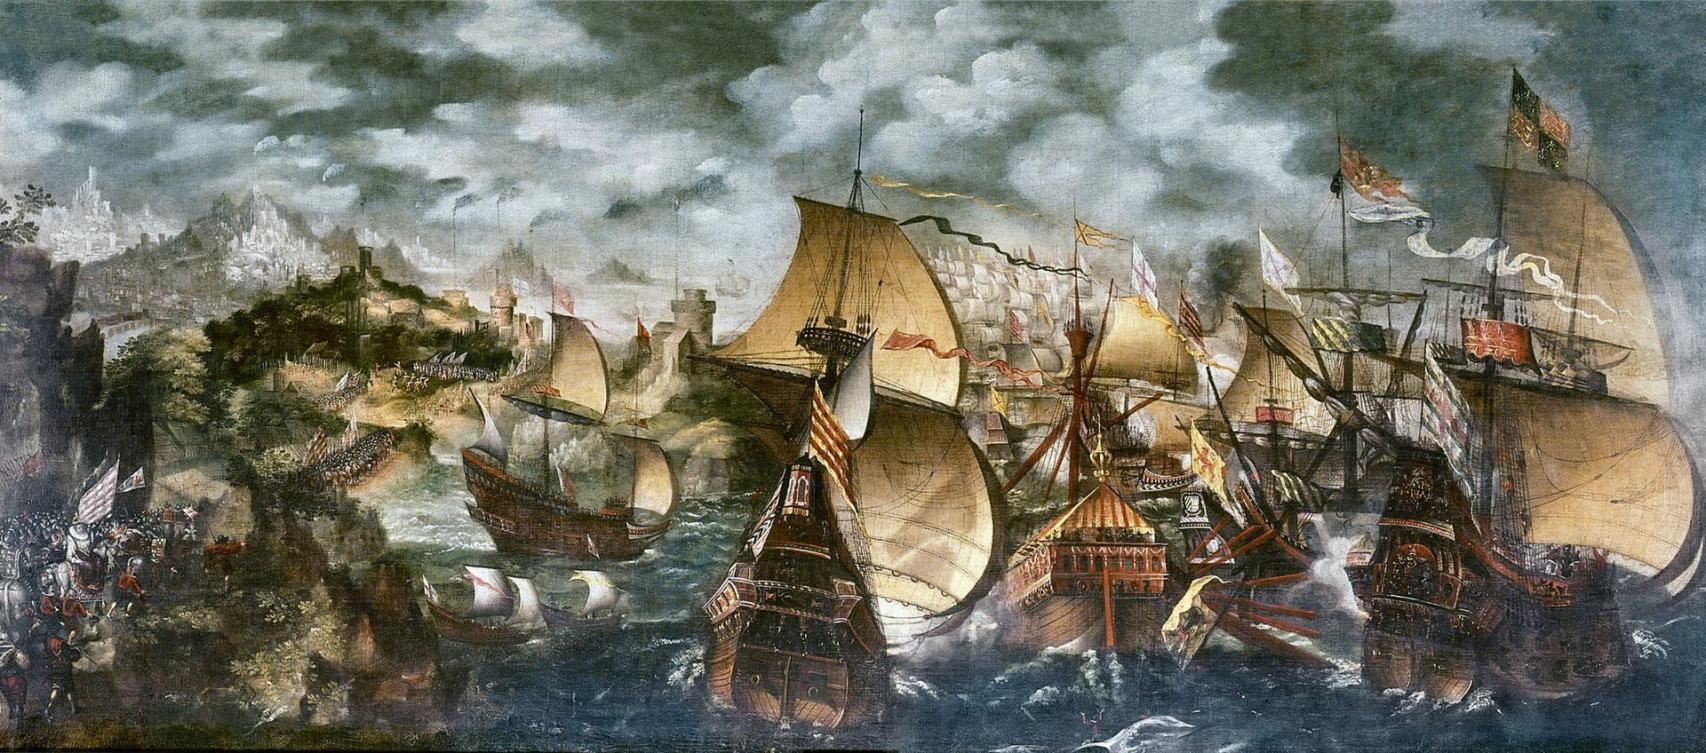 contra armada: la mayor catastrofe naval de la historia de inglat erra